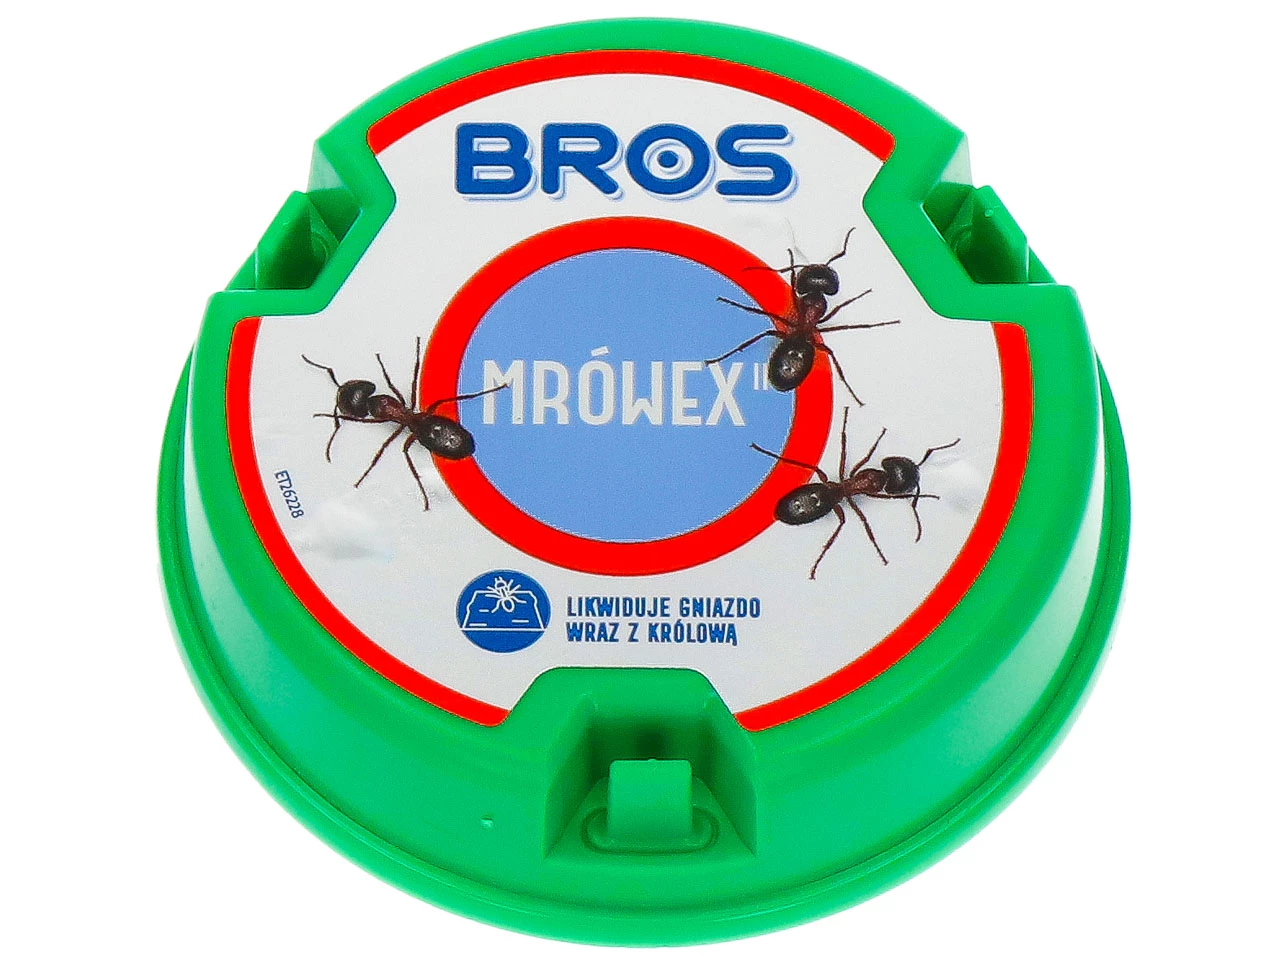 środek na mrówki, preparat na mrówki, mrówex, bros na mrówki, trutka na mrówki, środek na mrówki, preparat na mrówki ogrodowe, trutka na mrówki, karmnik na mrówki, trutka w karmniku na mrówki, 